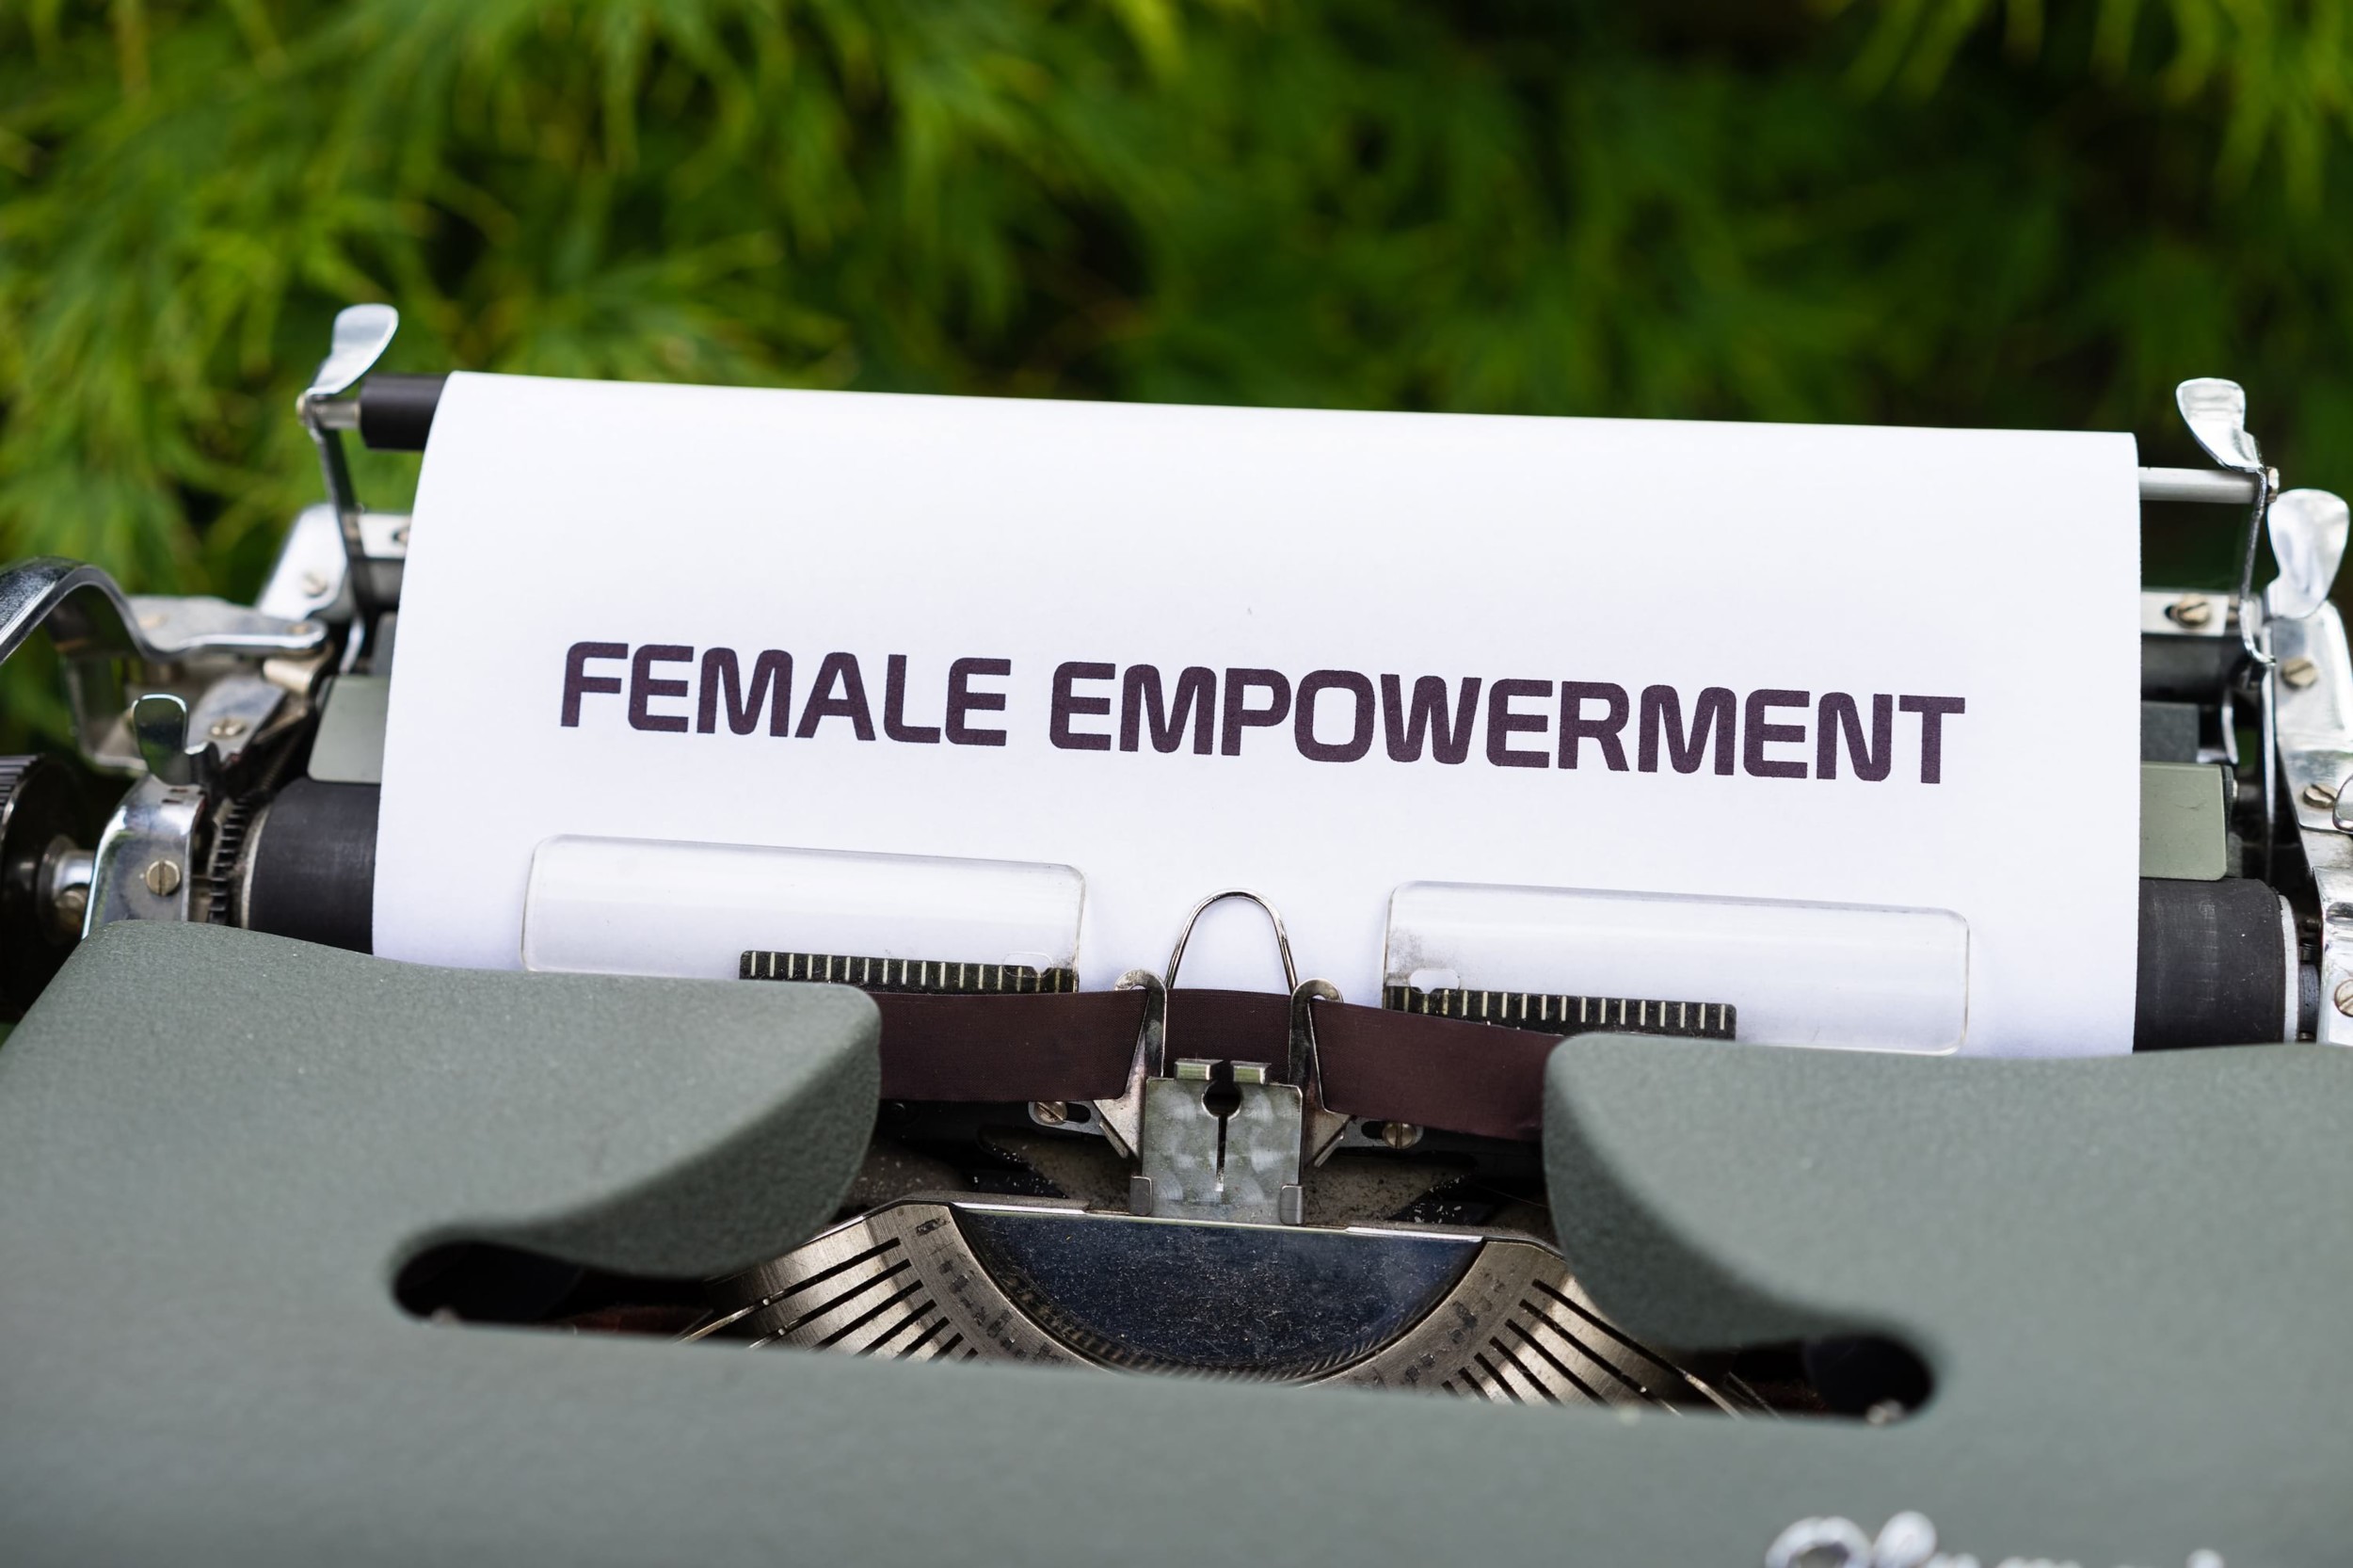 Schreibmaschine mit Blatt und Aufschrift Female Empowerment